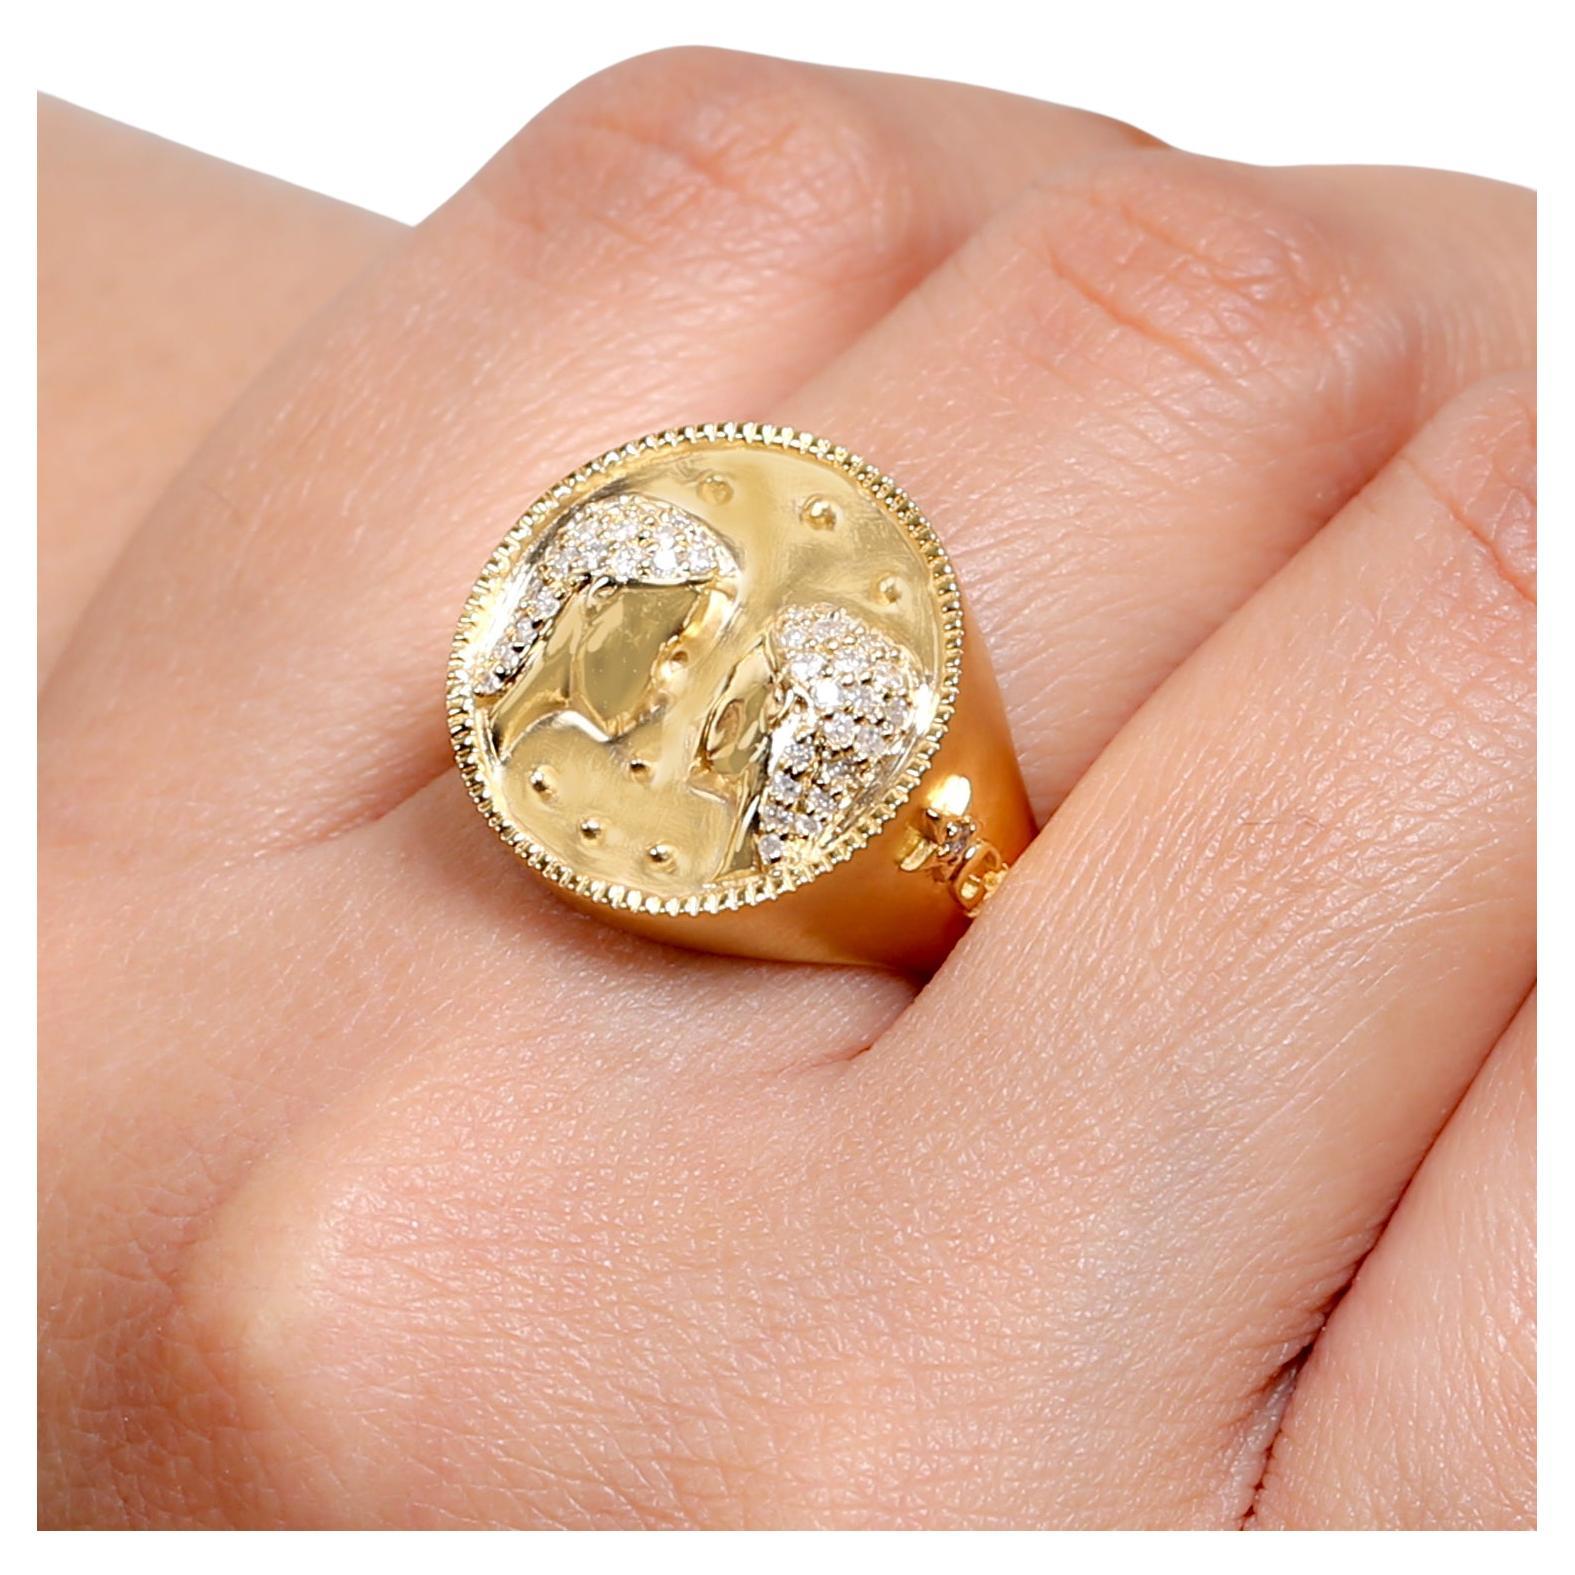 Dieser Ring ist ein Pave-Diamantring, der mit schönen und funkelnden Diamanten besetzt ist. Der Ring hat ein einzigartiges und exquisites Design, das ihn besonders für besondere Anlässe geeignet macht.

14KT:10.622g,
D:0.31ct,